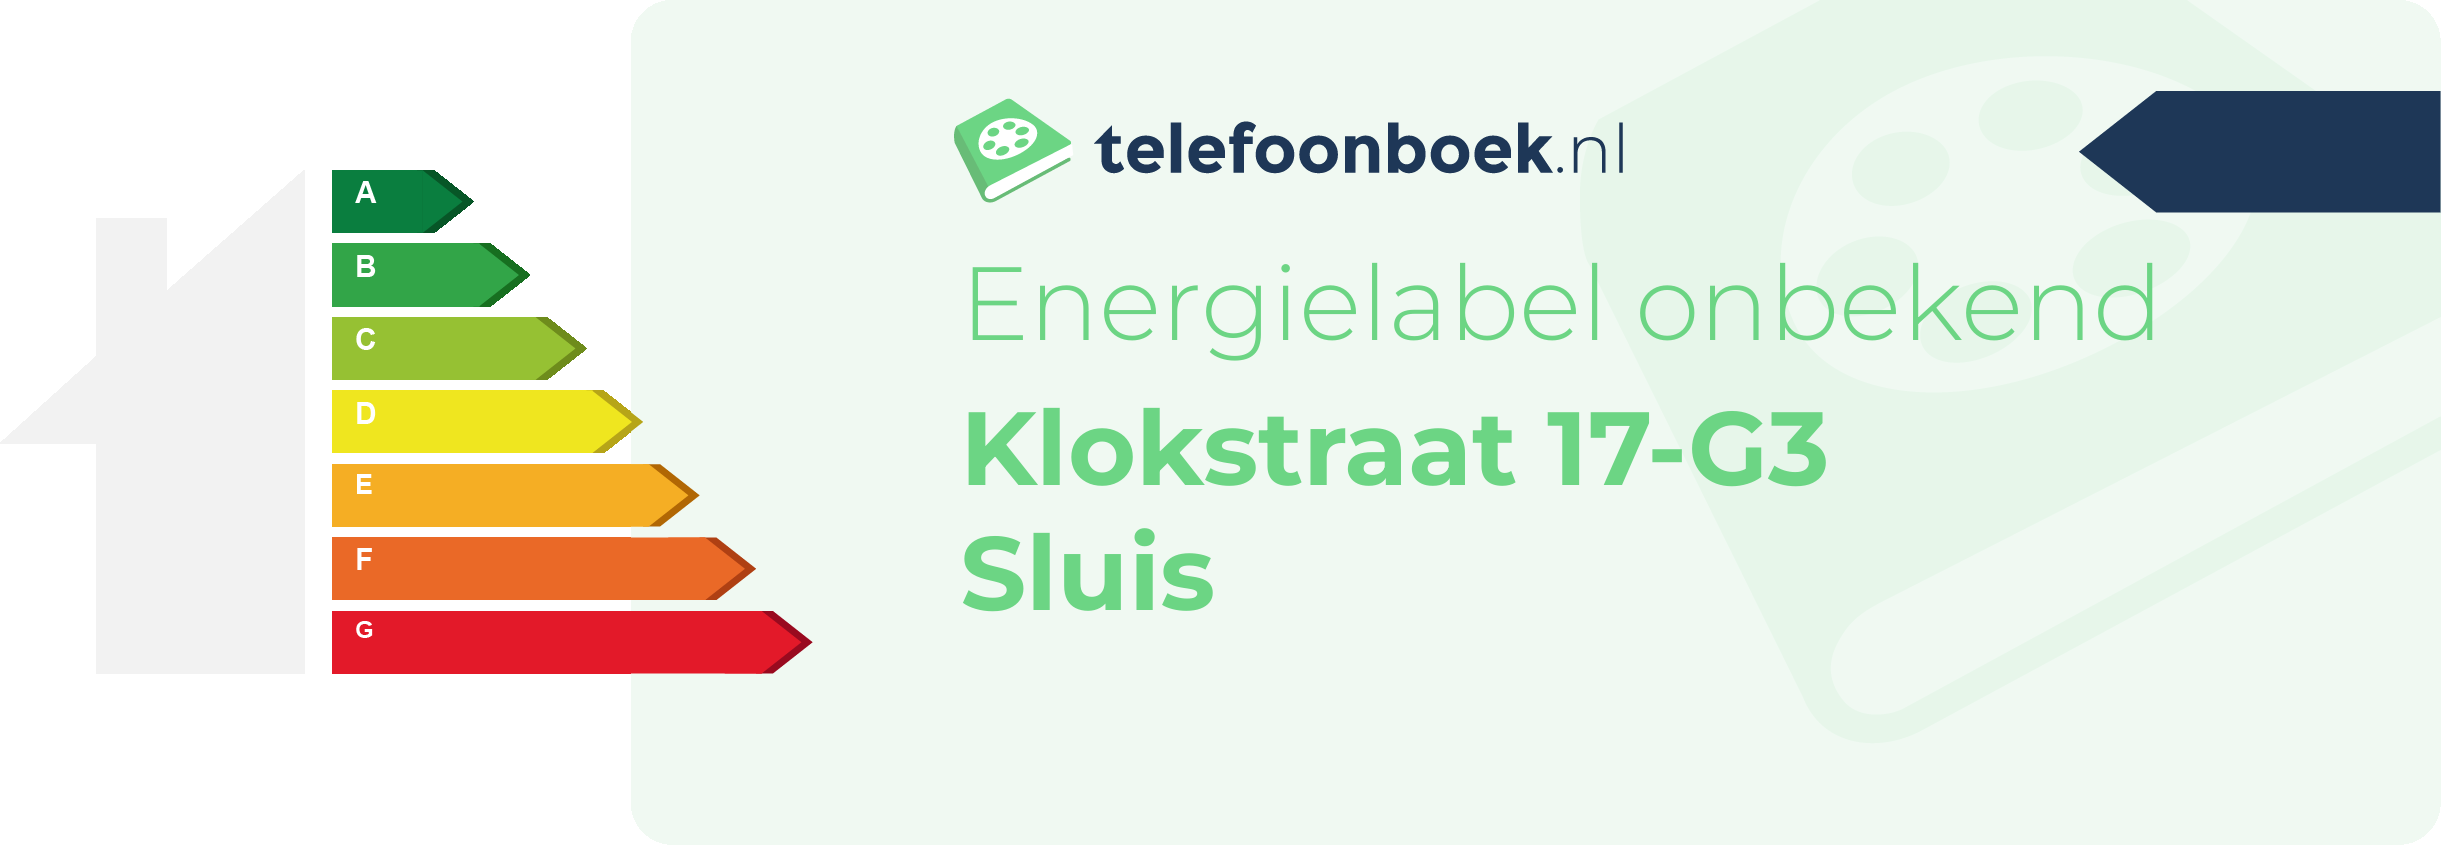 Energielabel Klokstraat 17-G3 Sluis